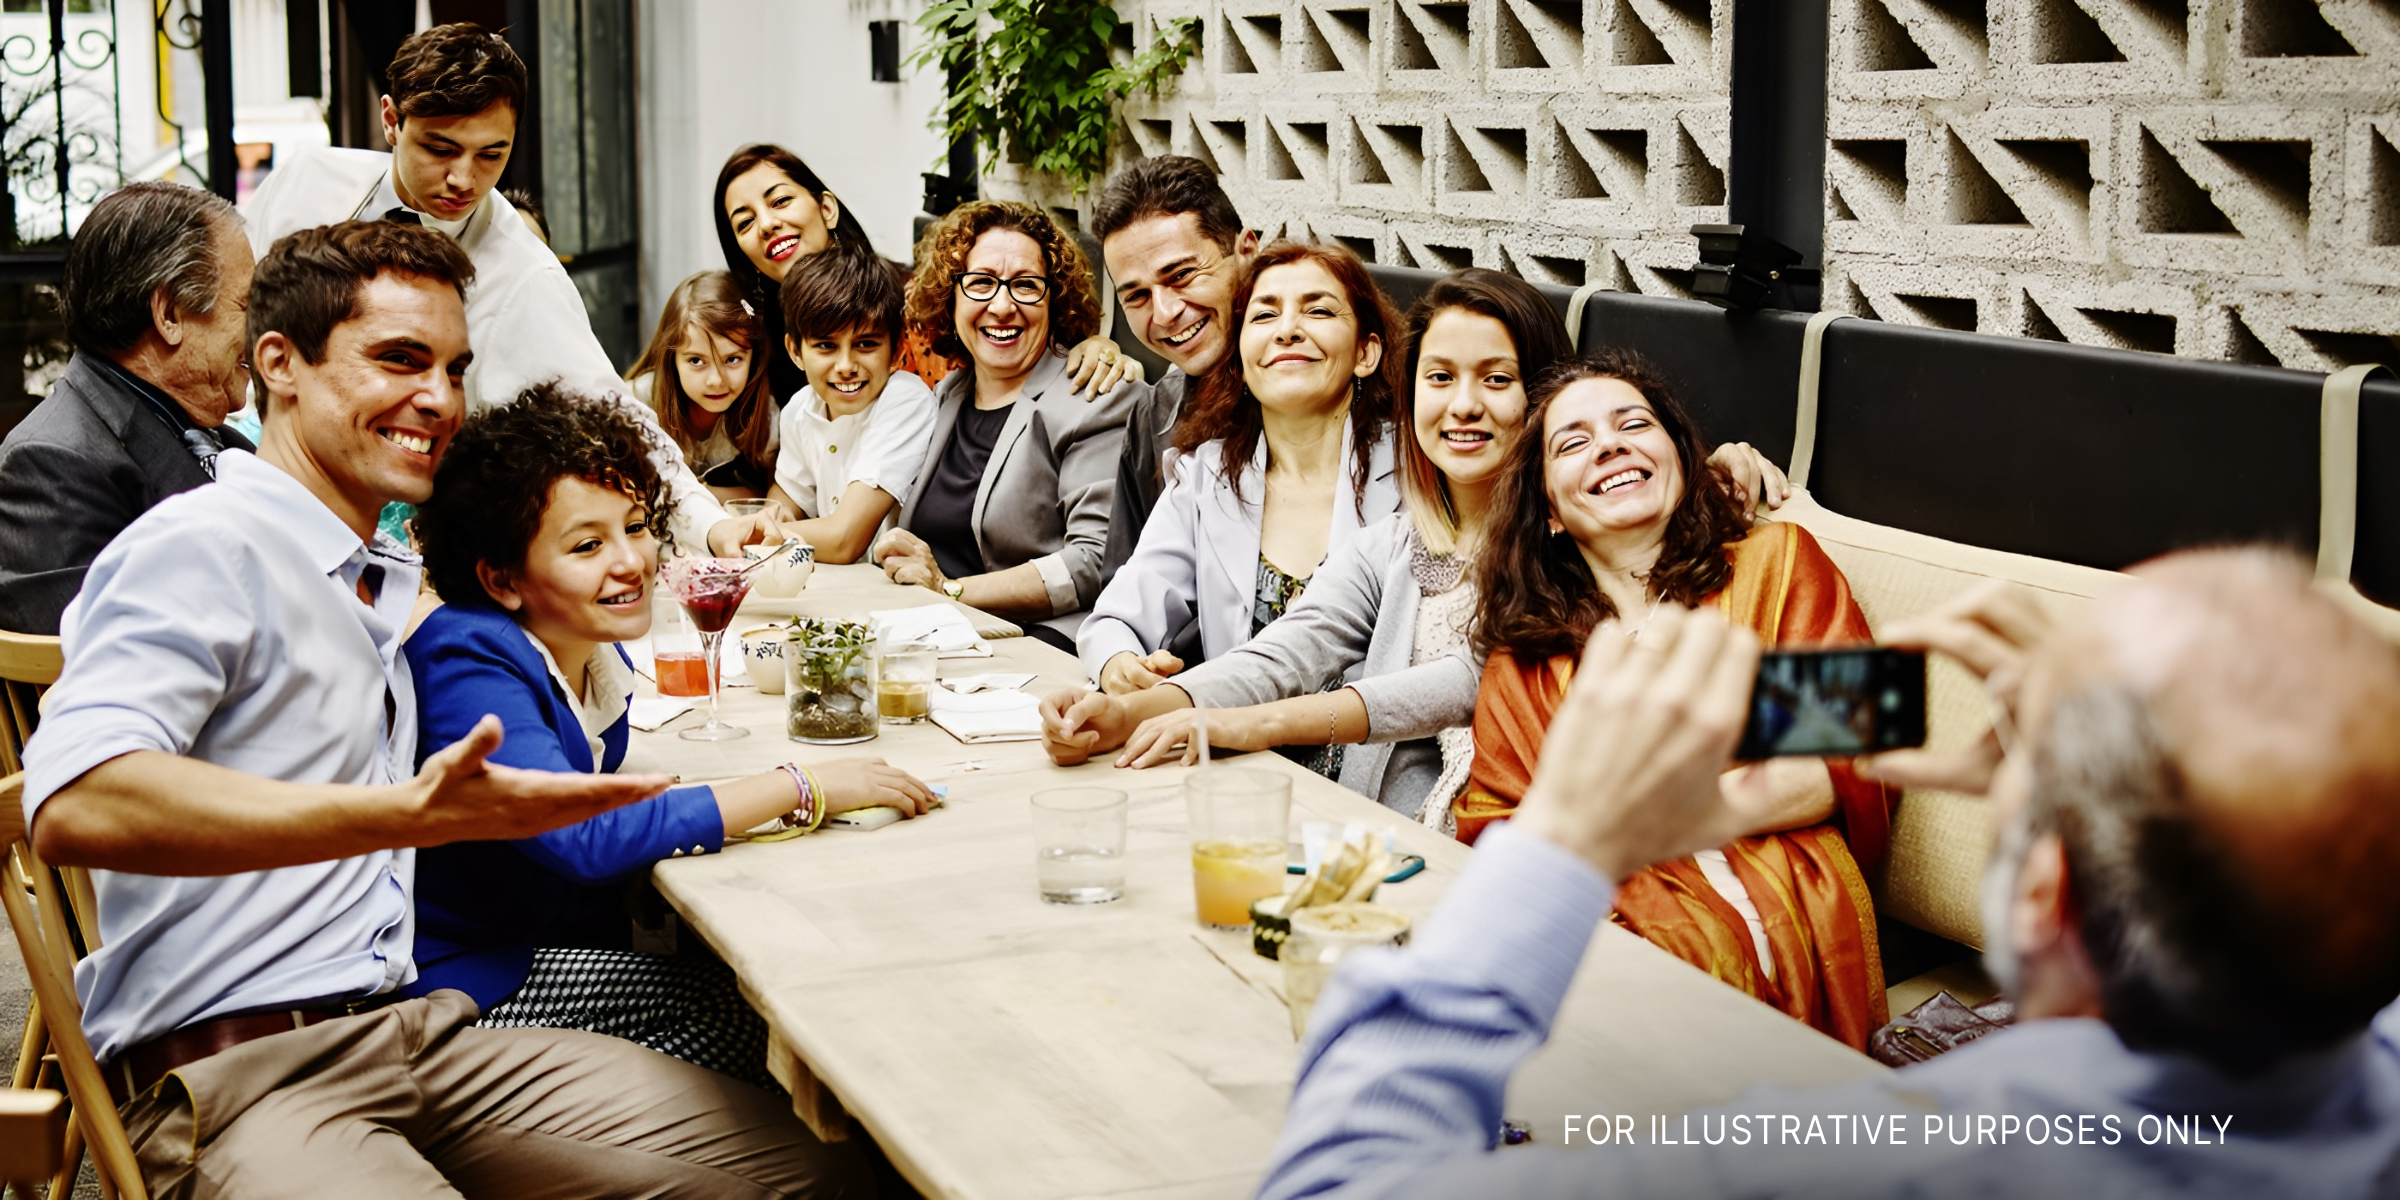 Ein Mann macht ein Familienfoto mit seinem Smartphone während einer Dinnerparty in einem Restaurant | Quelle: Getty Images